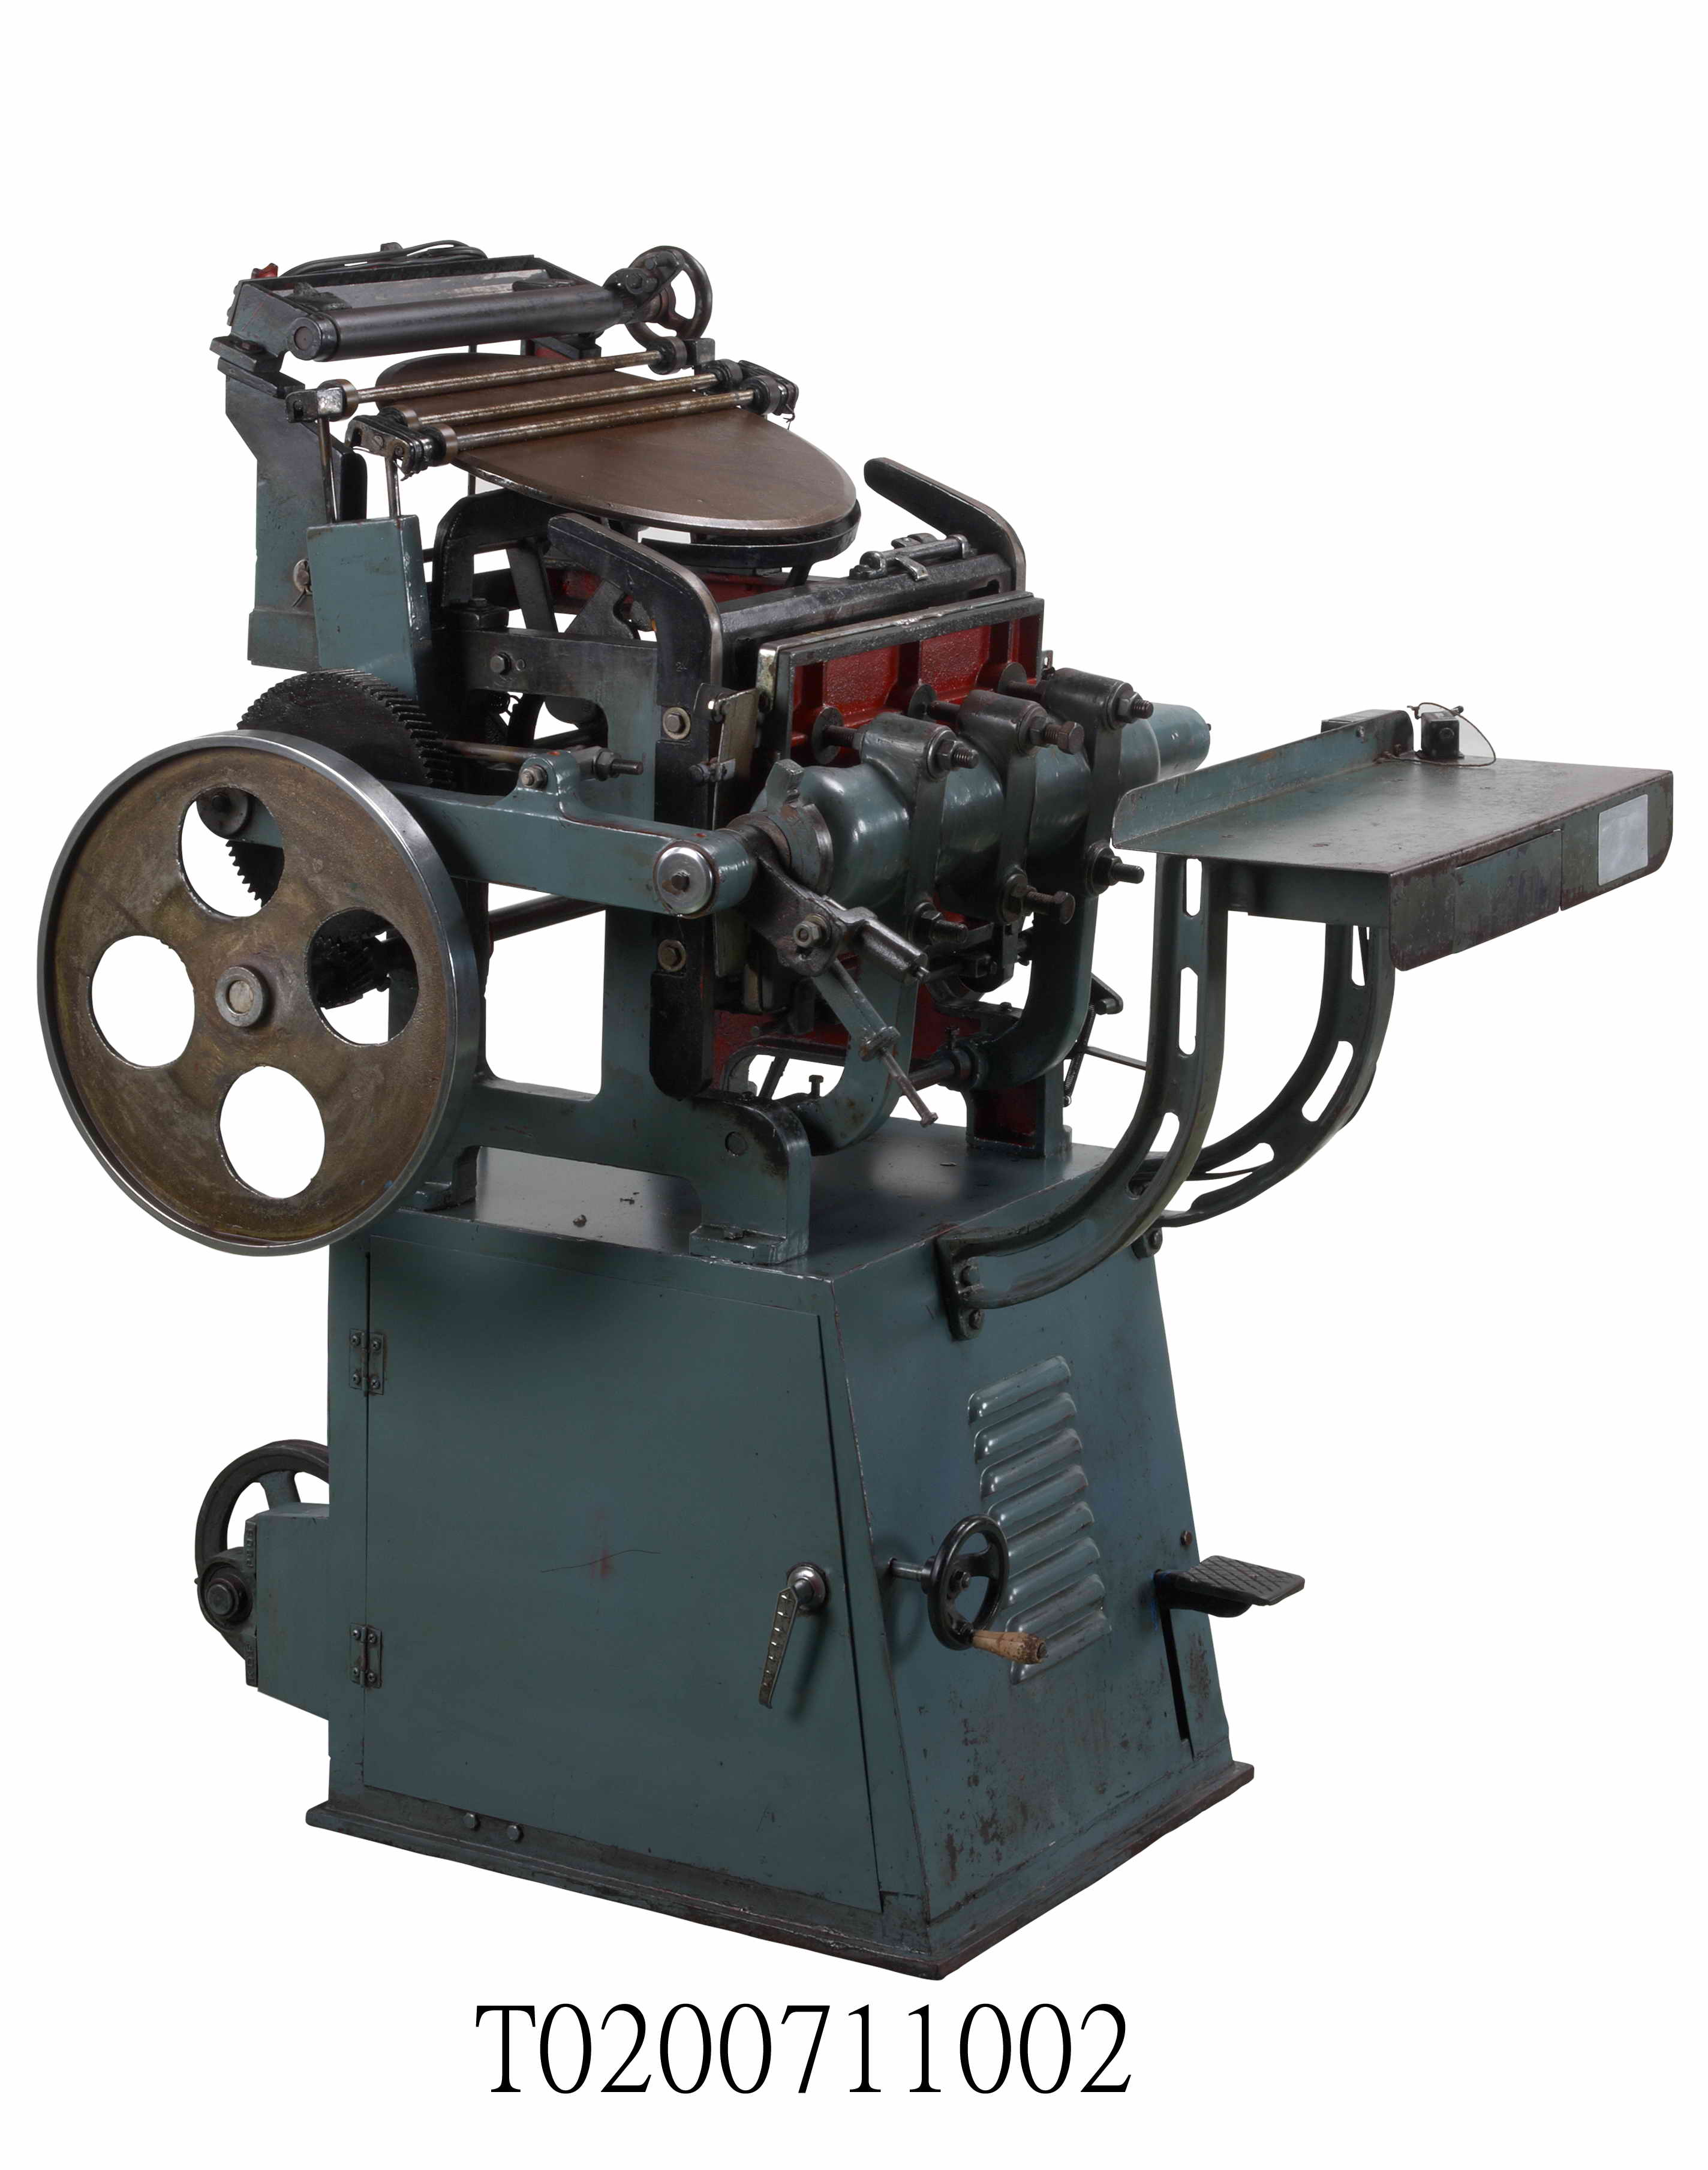 Automatic Multigraph Press